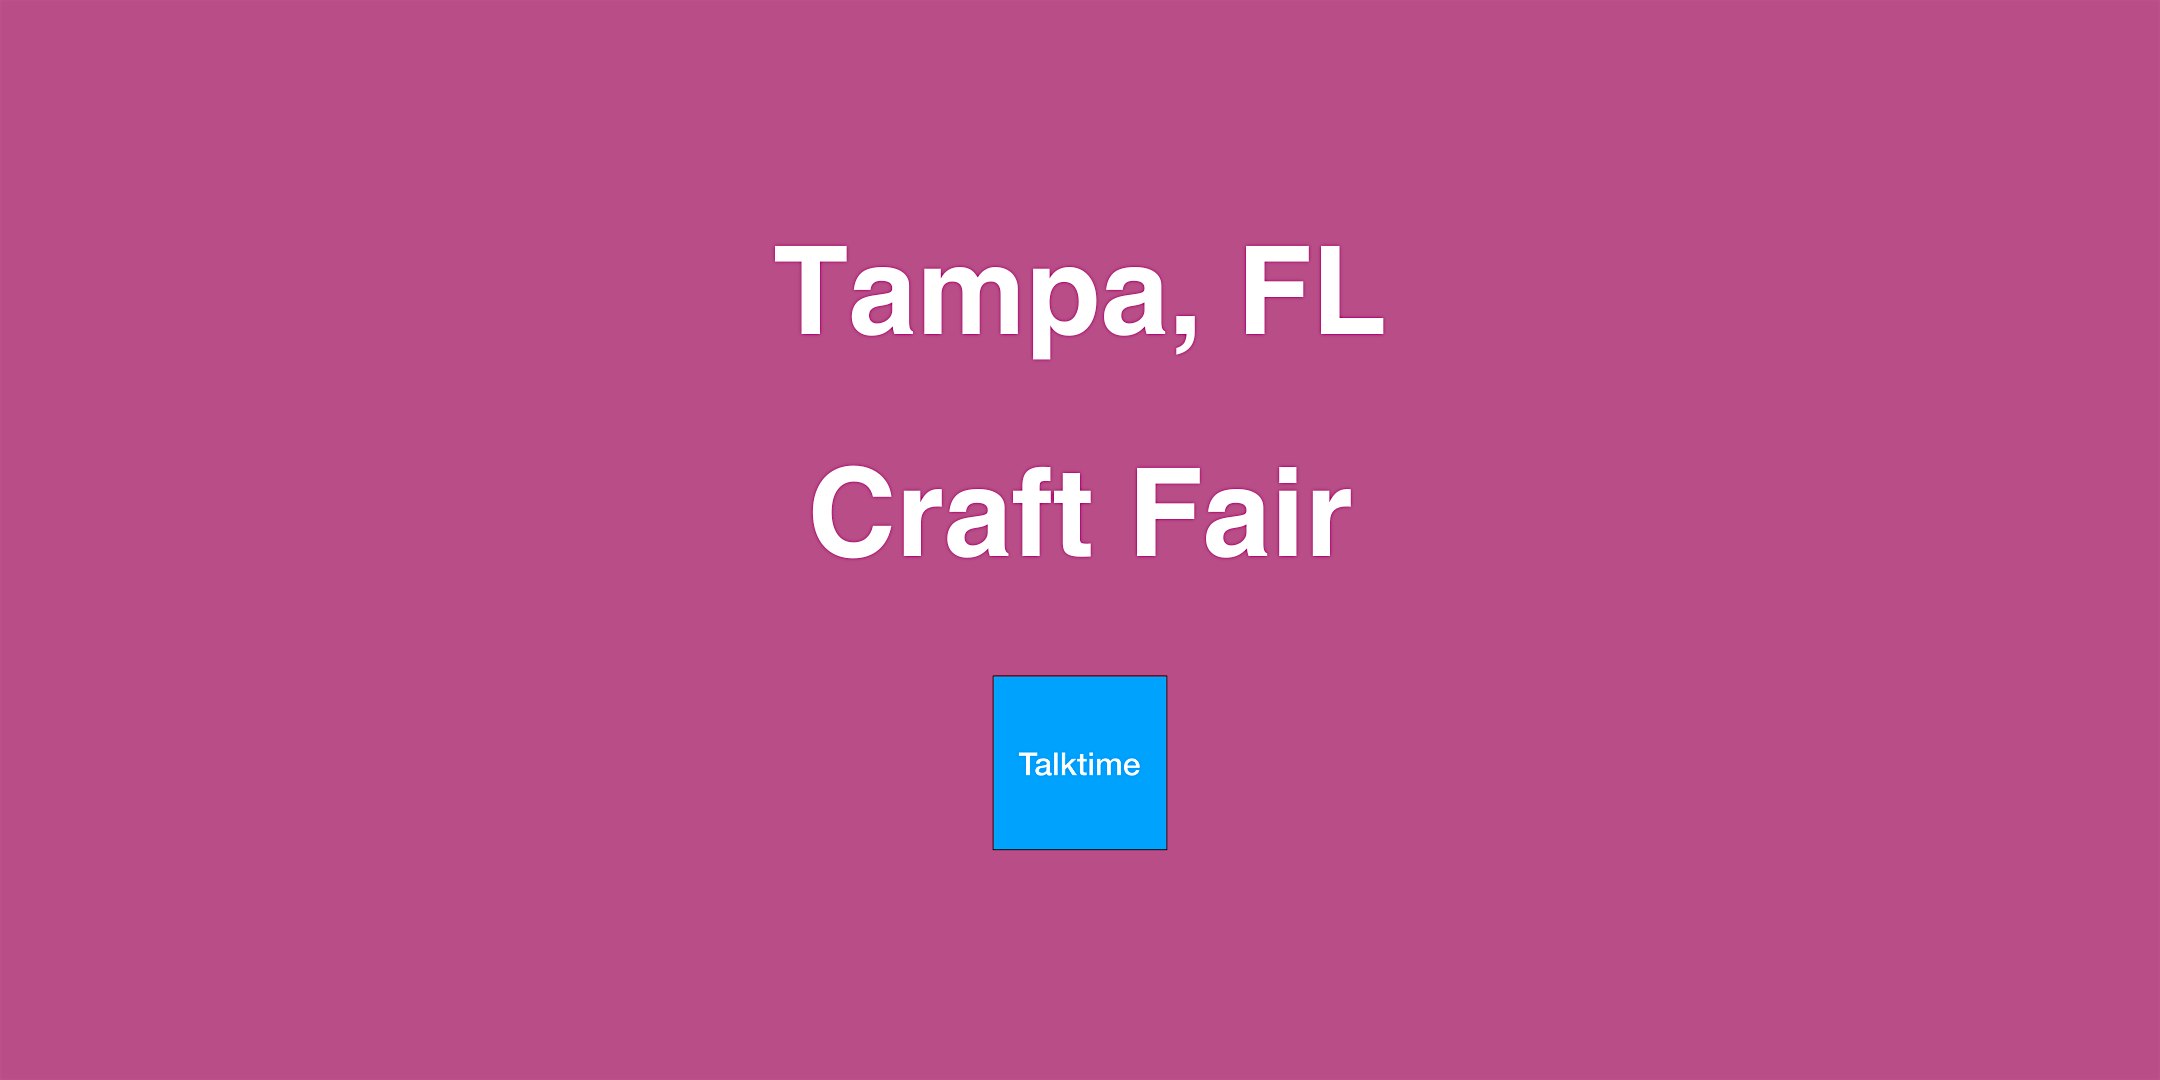 Craft Fair - Tampa